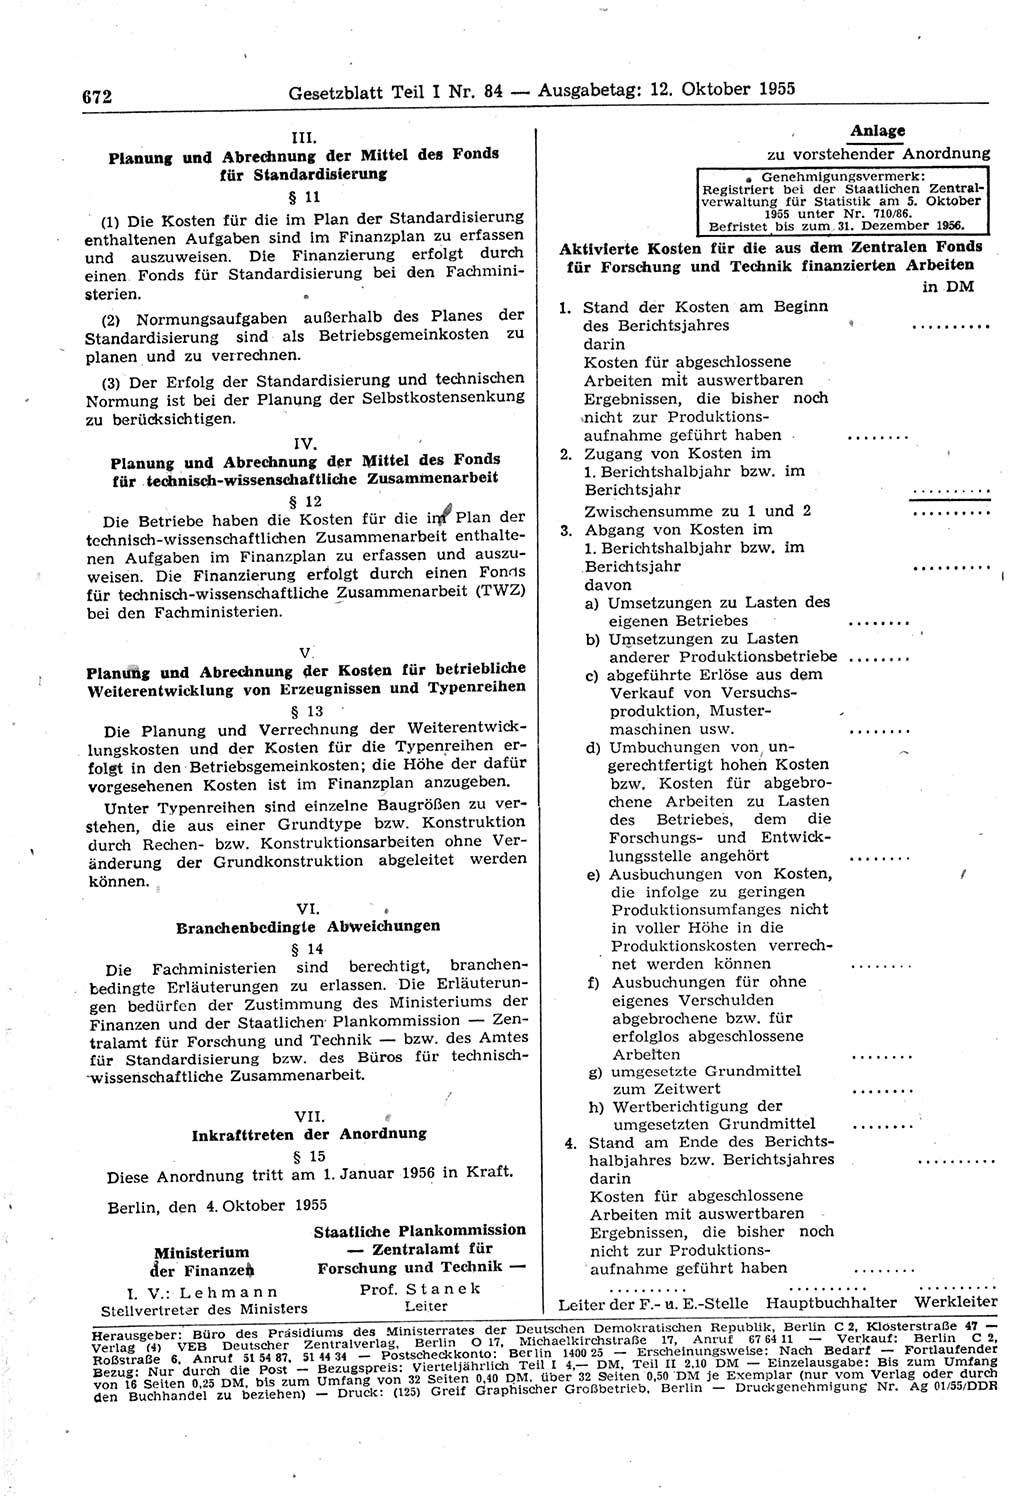 Gesetzblatt (GBl.) der Deutschen Demokratischen Republik (DDR) Teil Ⅰ 1955, Seite 672 (GBl. DDR Ⅰ 1955, S. 672)